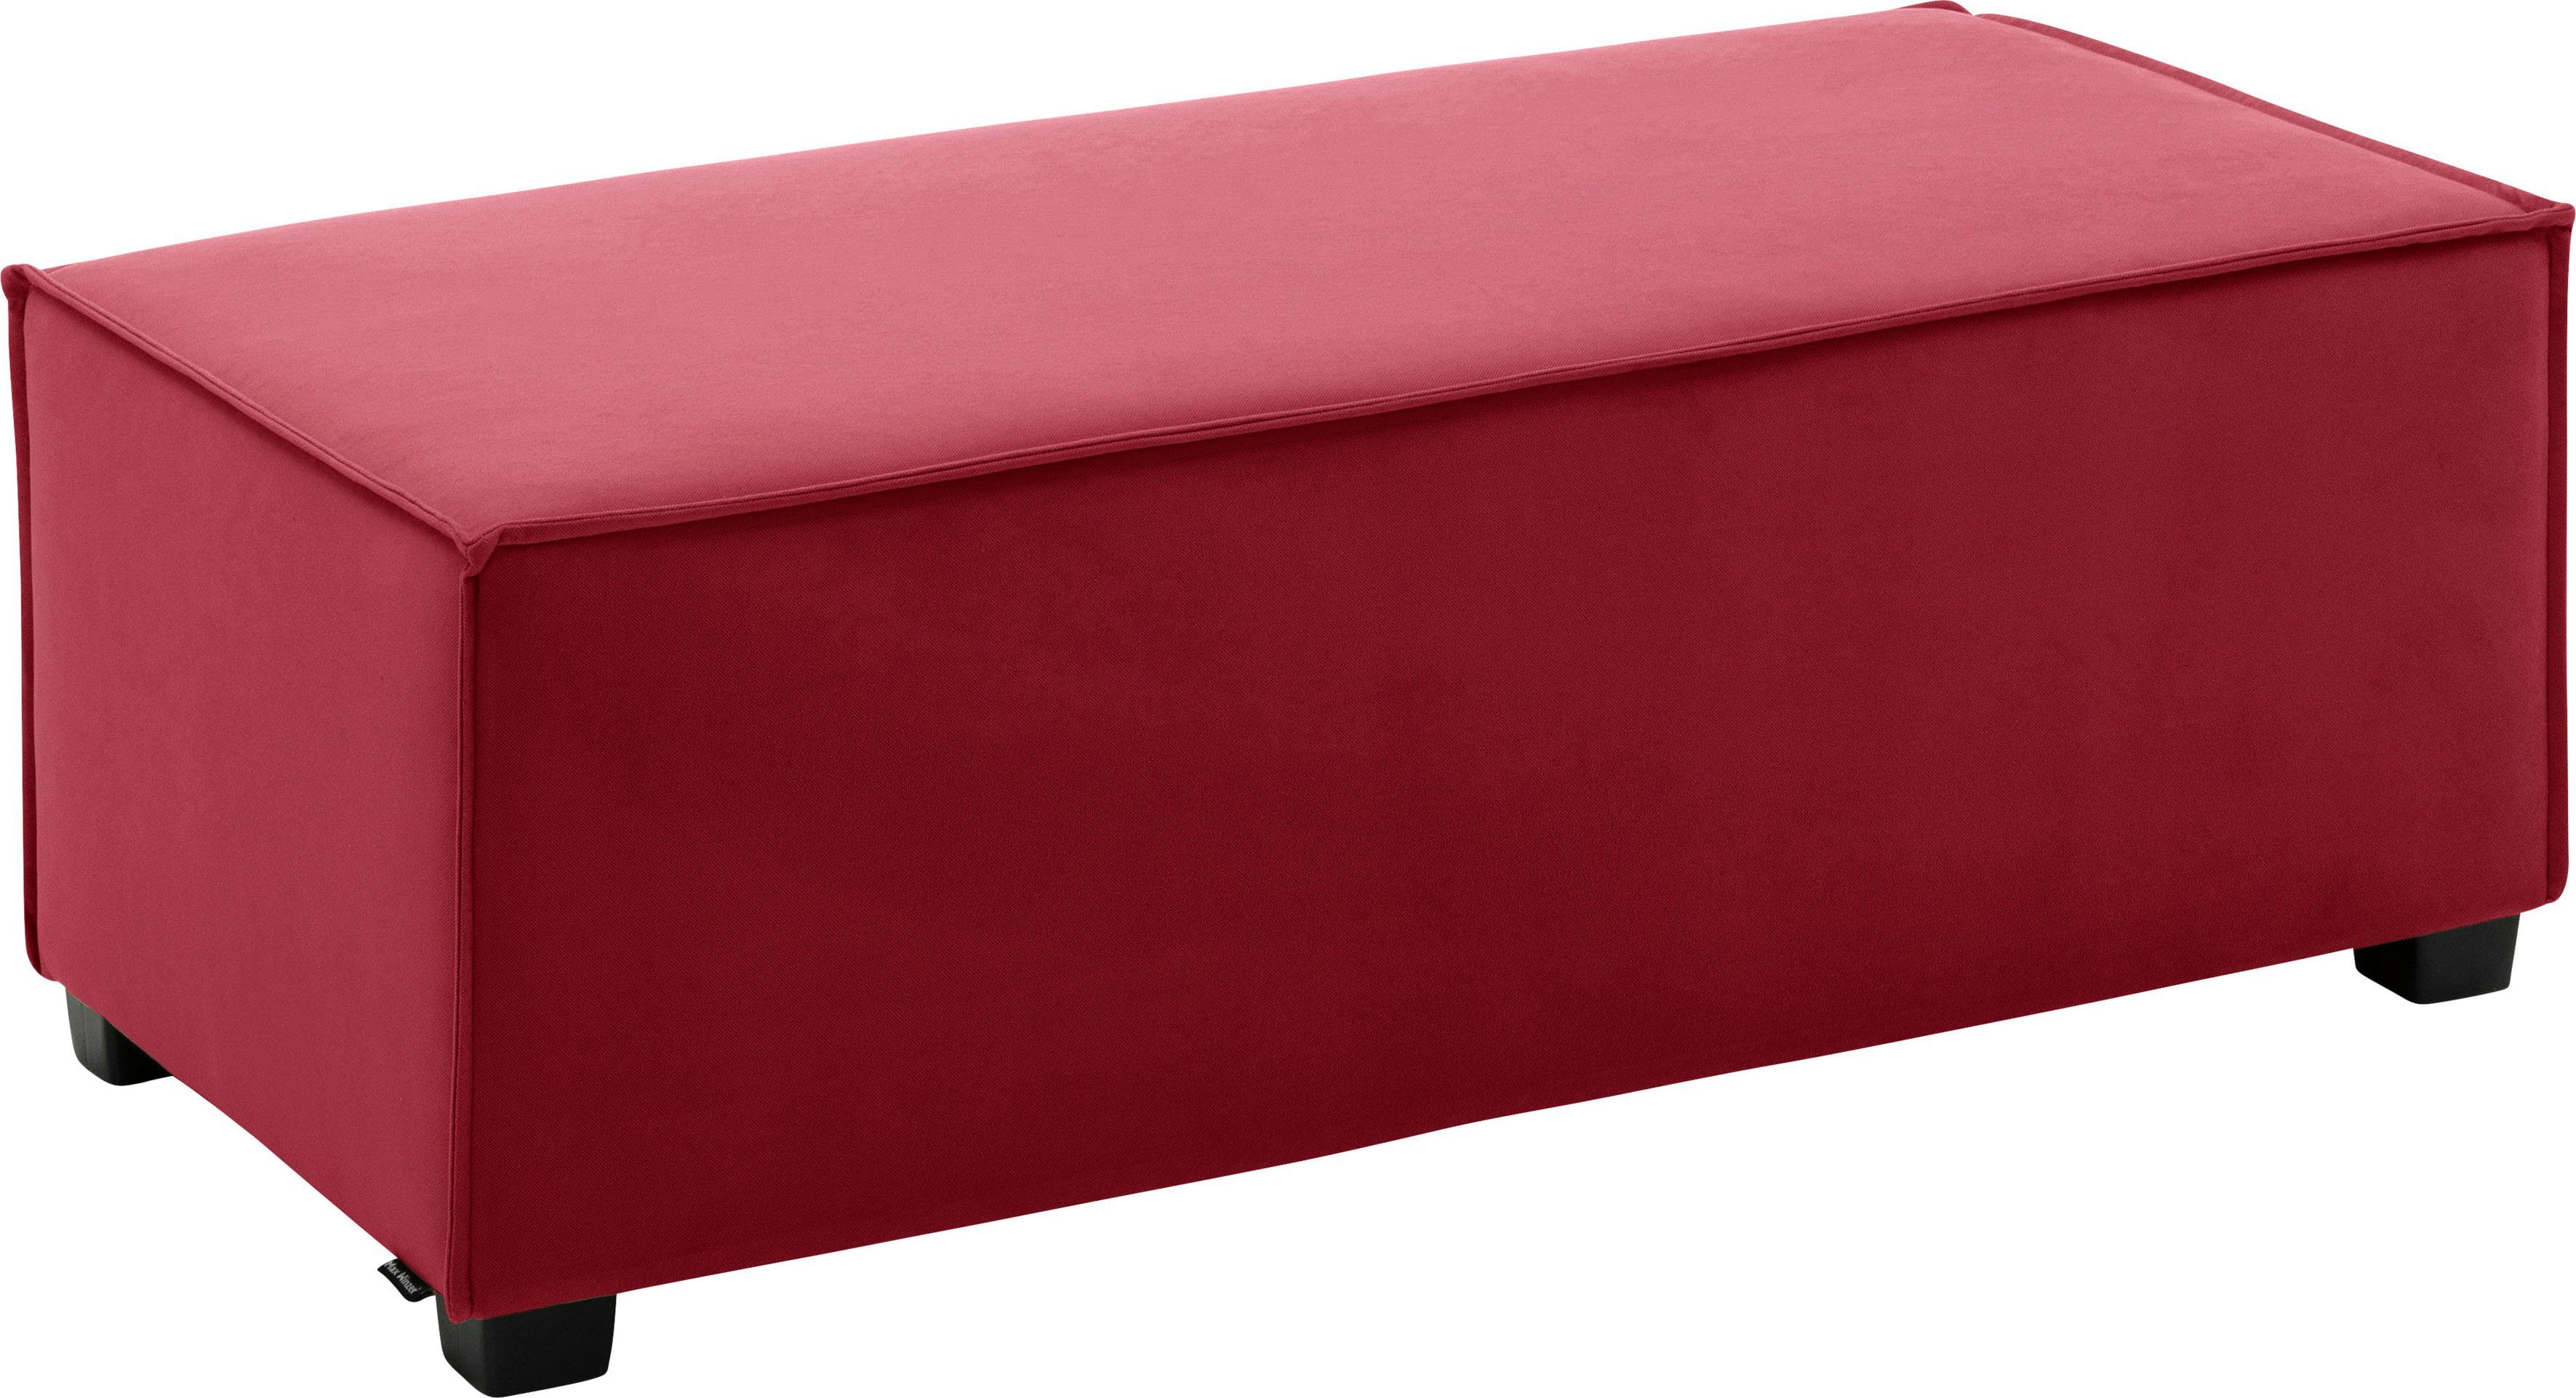 Max Winzer® Sofaelement MOVE, Einzelelement 120/60/42 cm, individuell kombinierbar rot